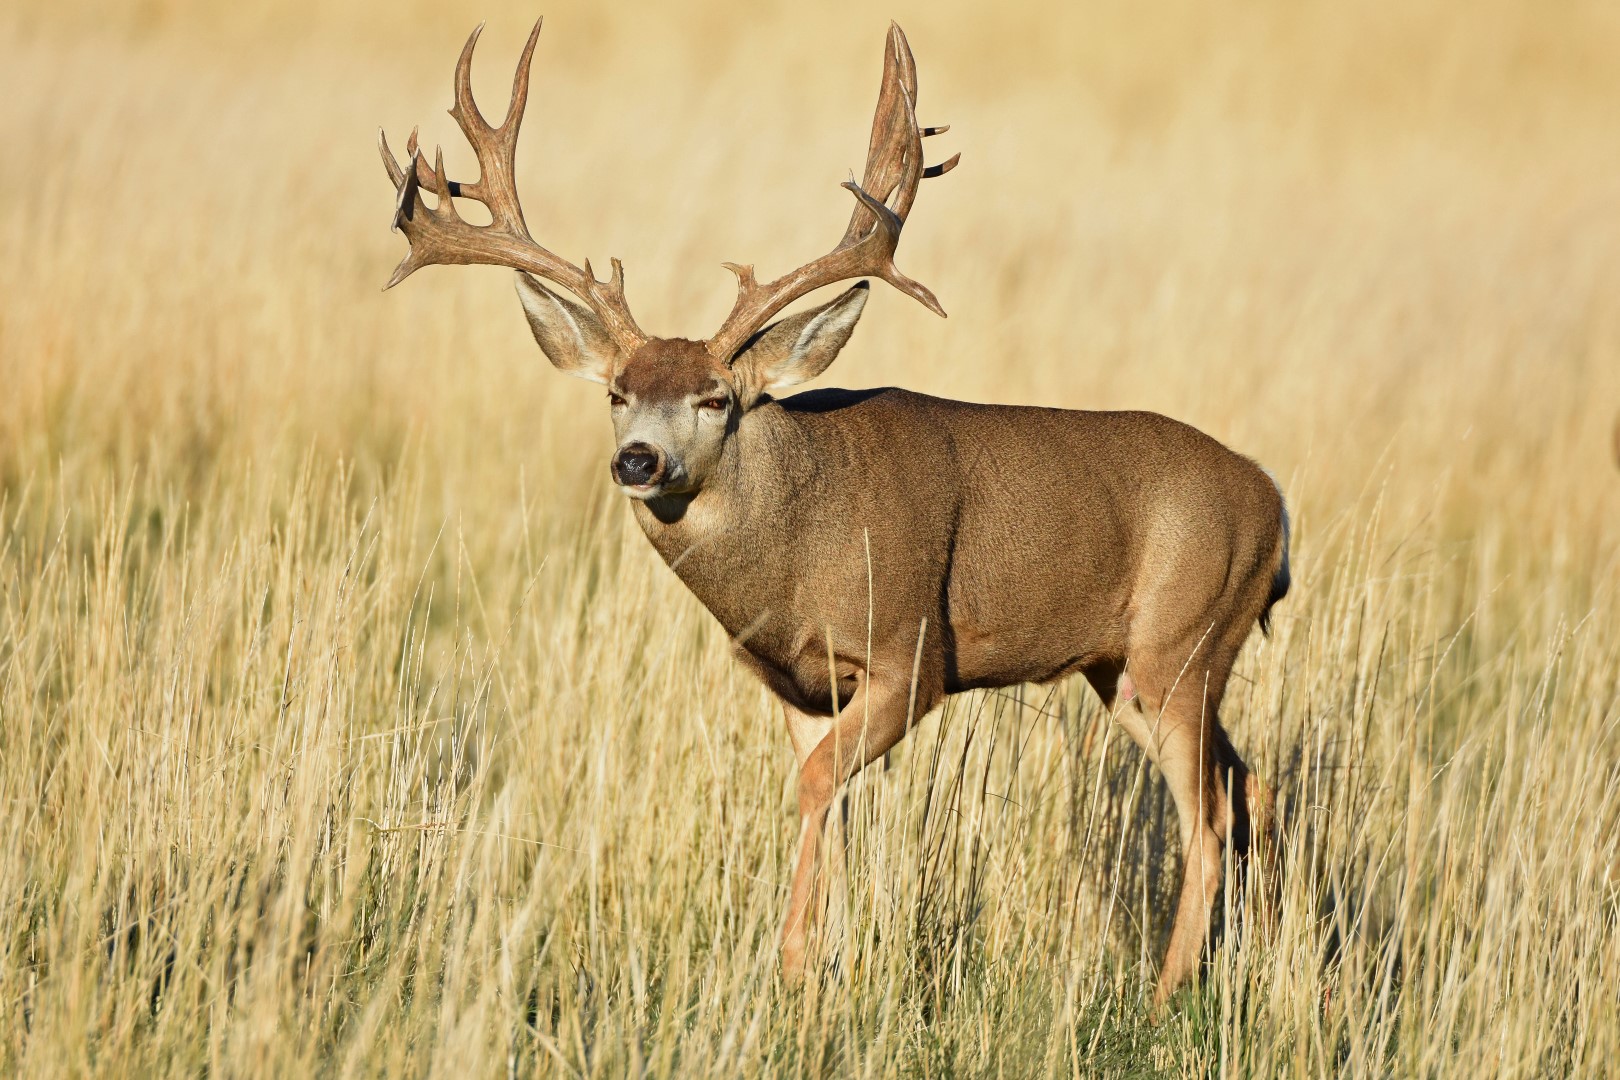 Mule deer (Odocoileus hemionus) By Murray Thomas - Wild Deer & Hunting ...